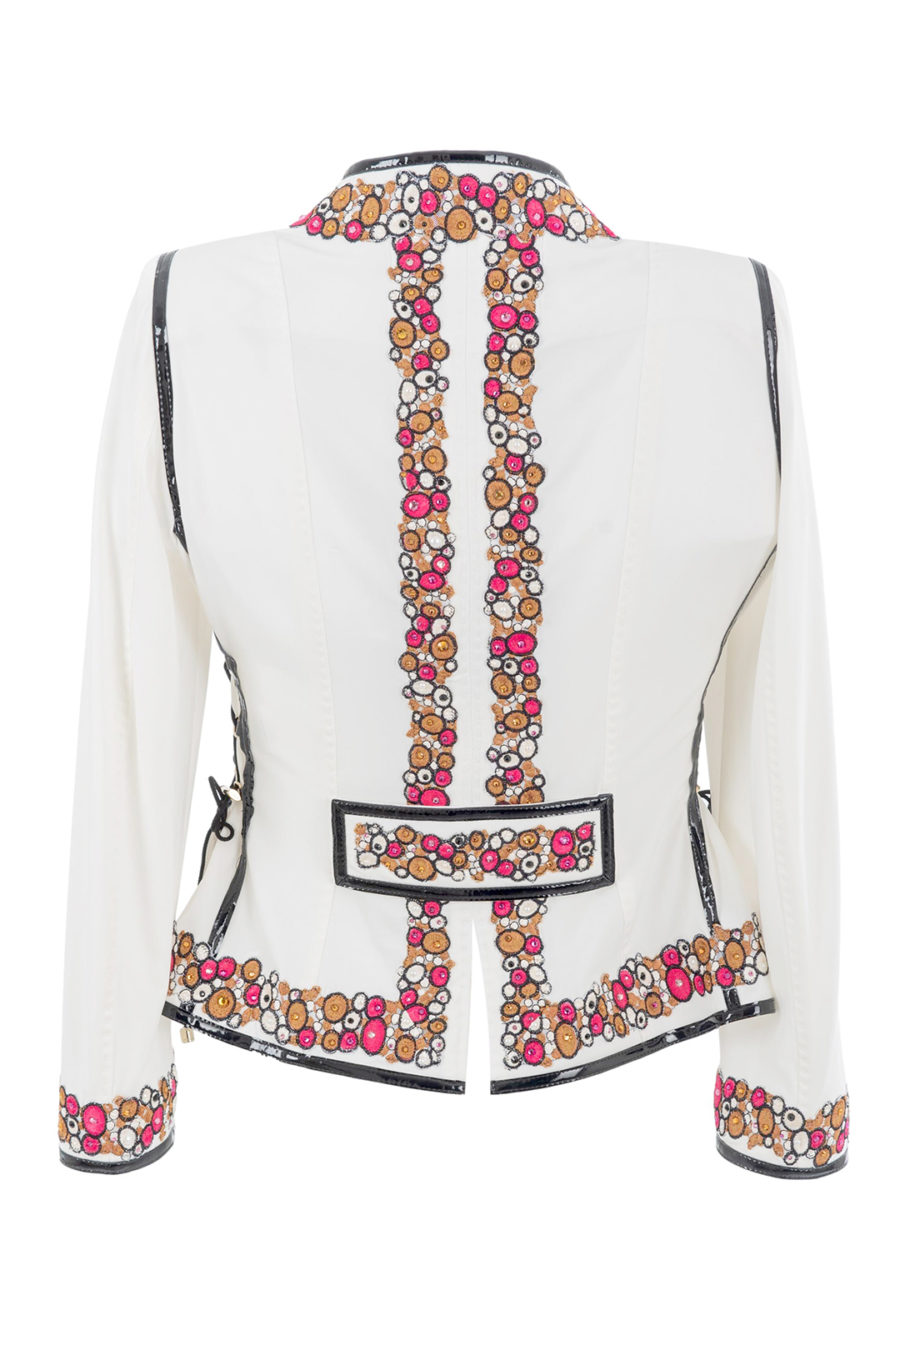 Haute Couture -Jacke mit "jewel-embroidery" und 775 handapplizierten Kristallen und Perlen von Swarovski, 4 Patten, Multisize